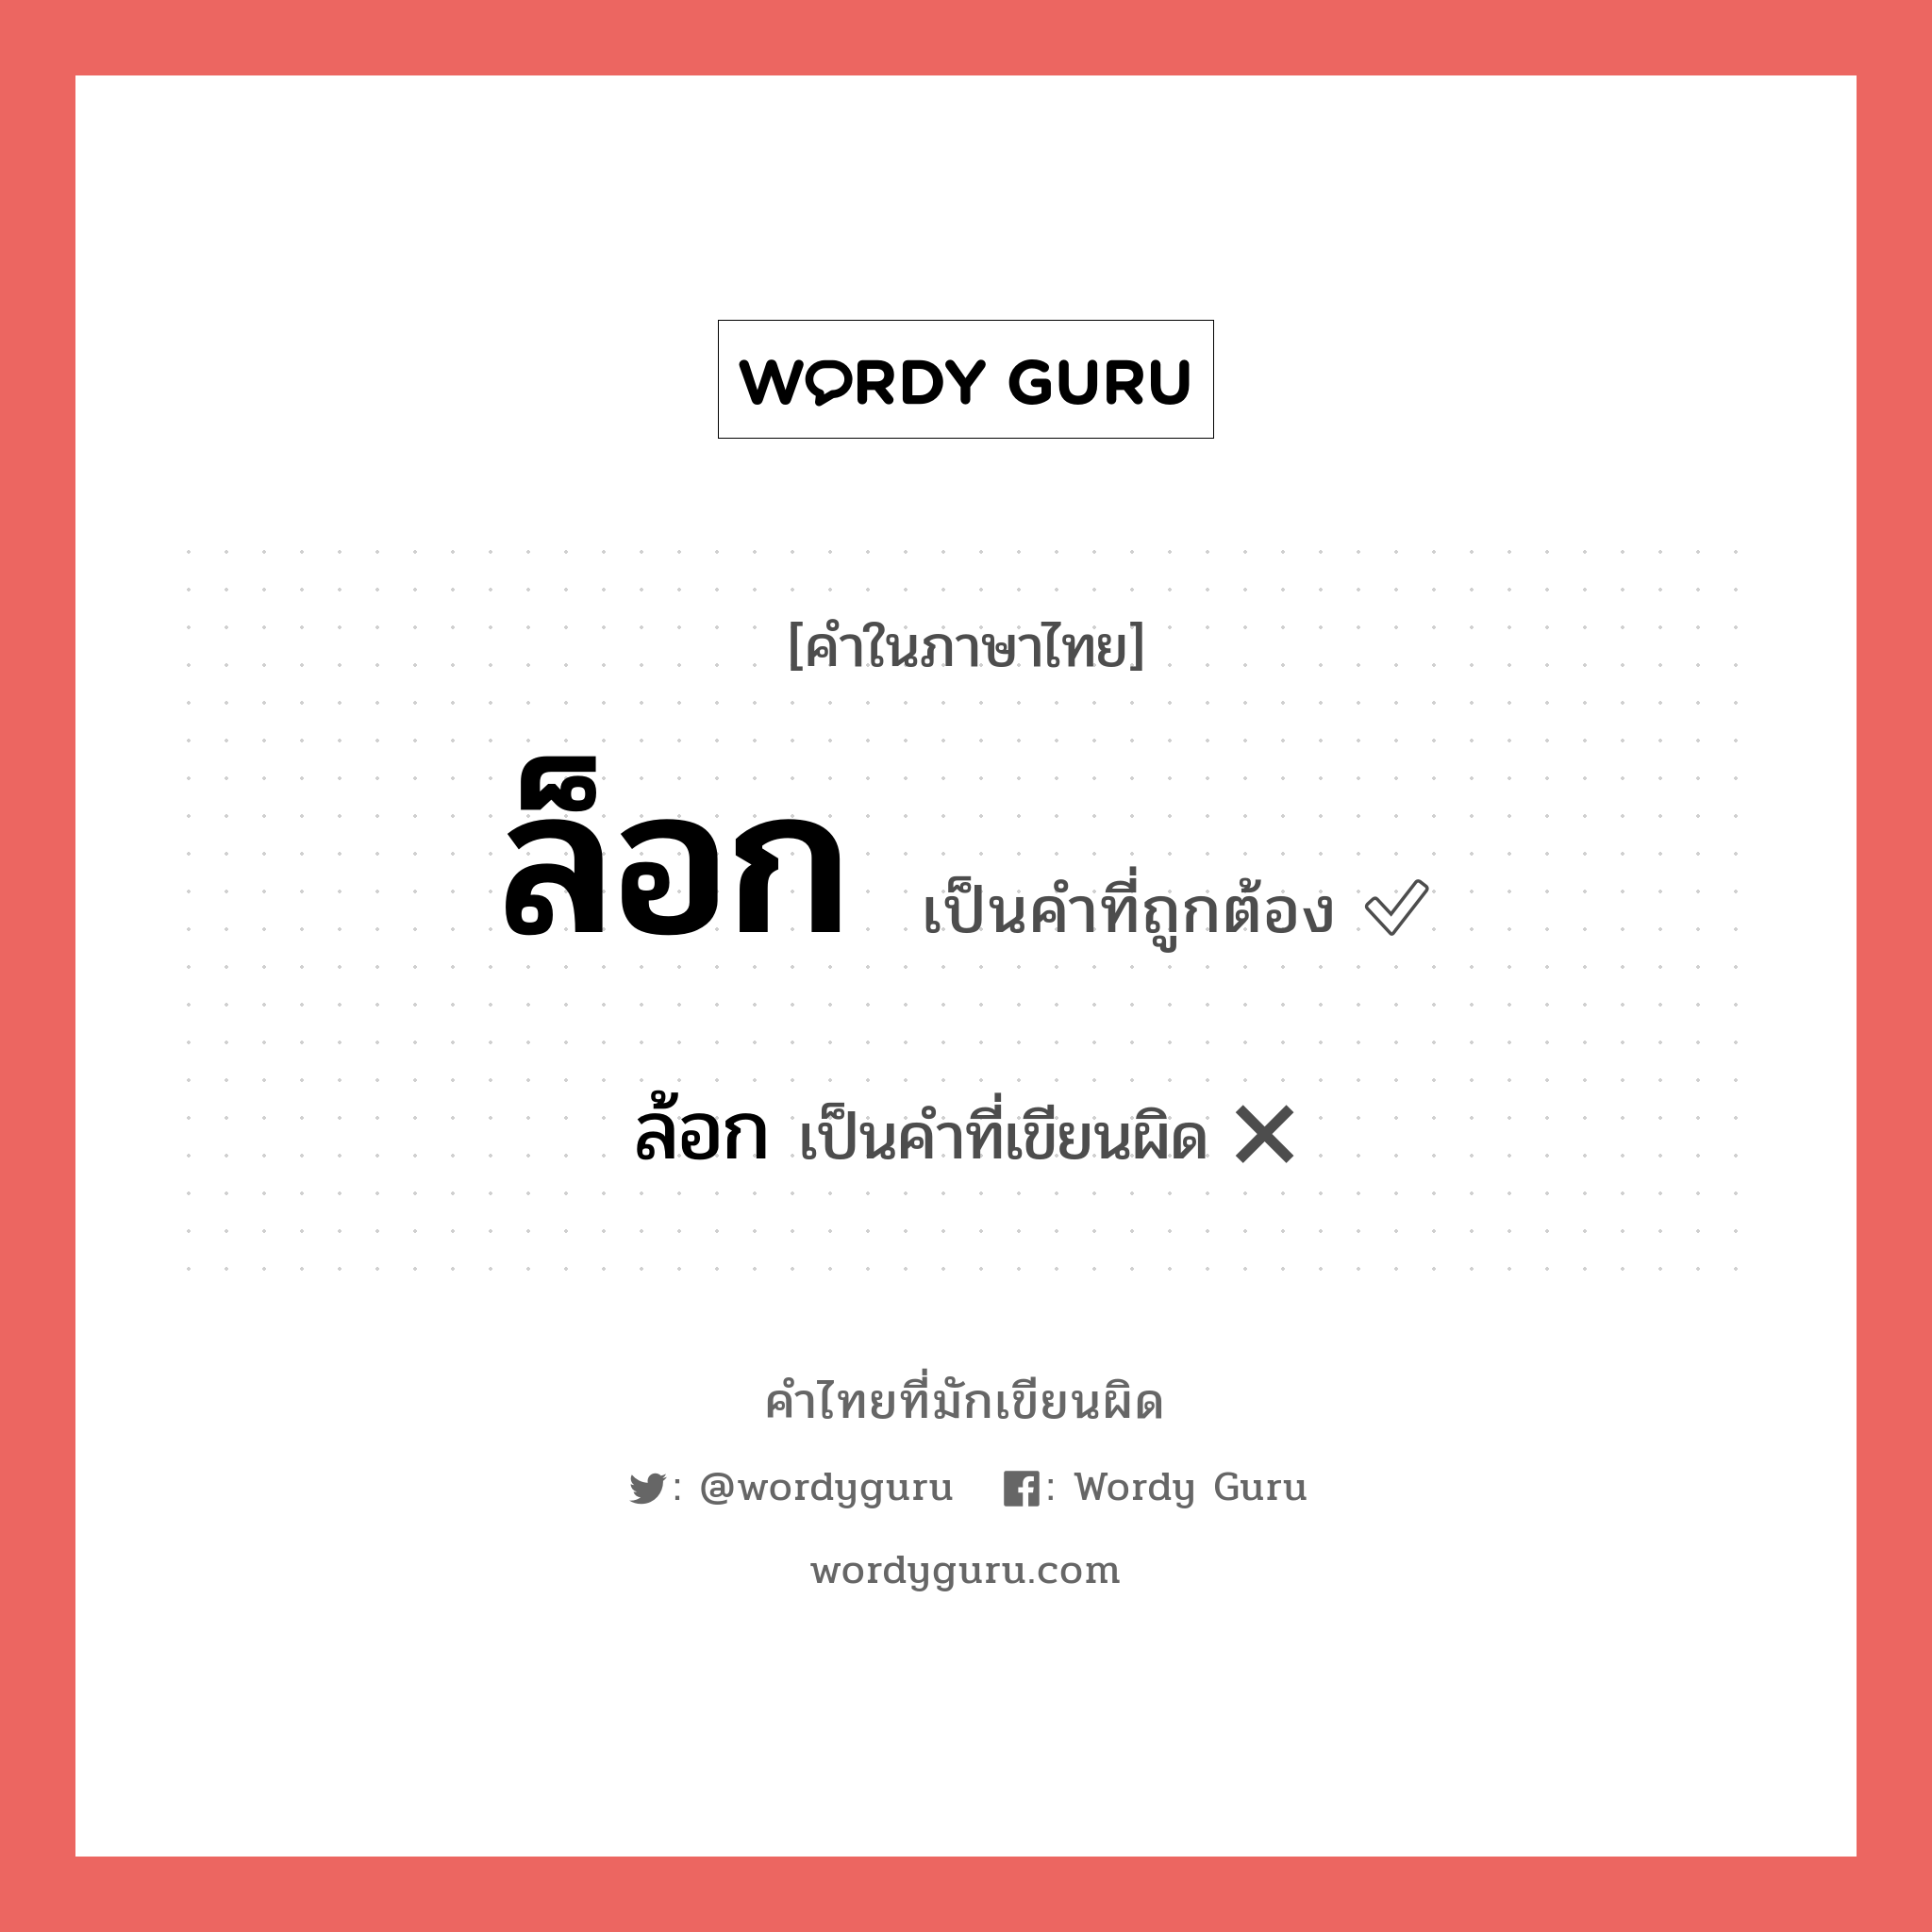 ล้อก หรือ ล็อก คำไหนเขียนถูก?, คำในภาษาไทยที่มักเขียนผิด ล้อก คำที่ผิด ❌ ล็อก